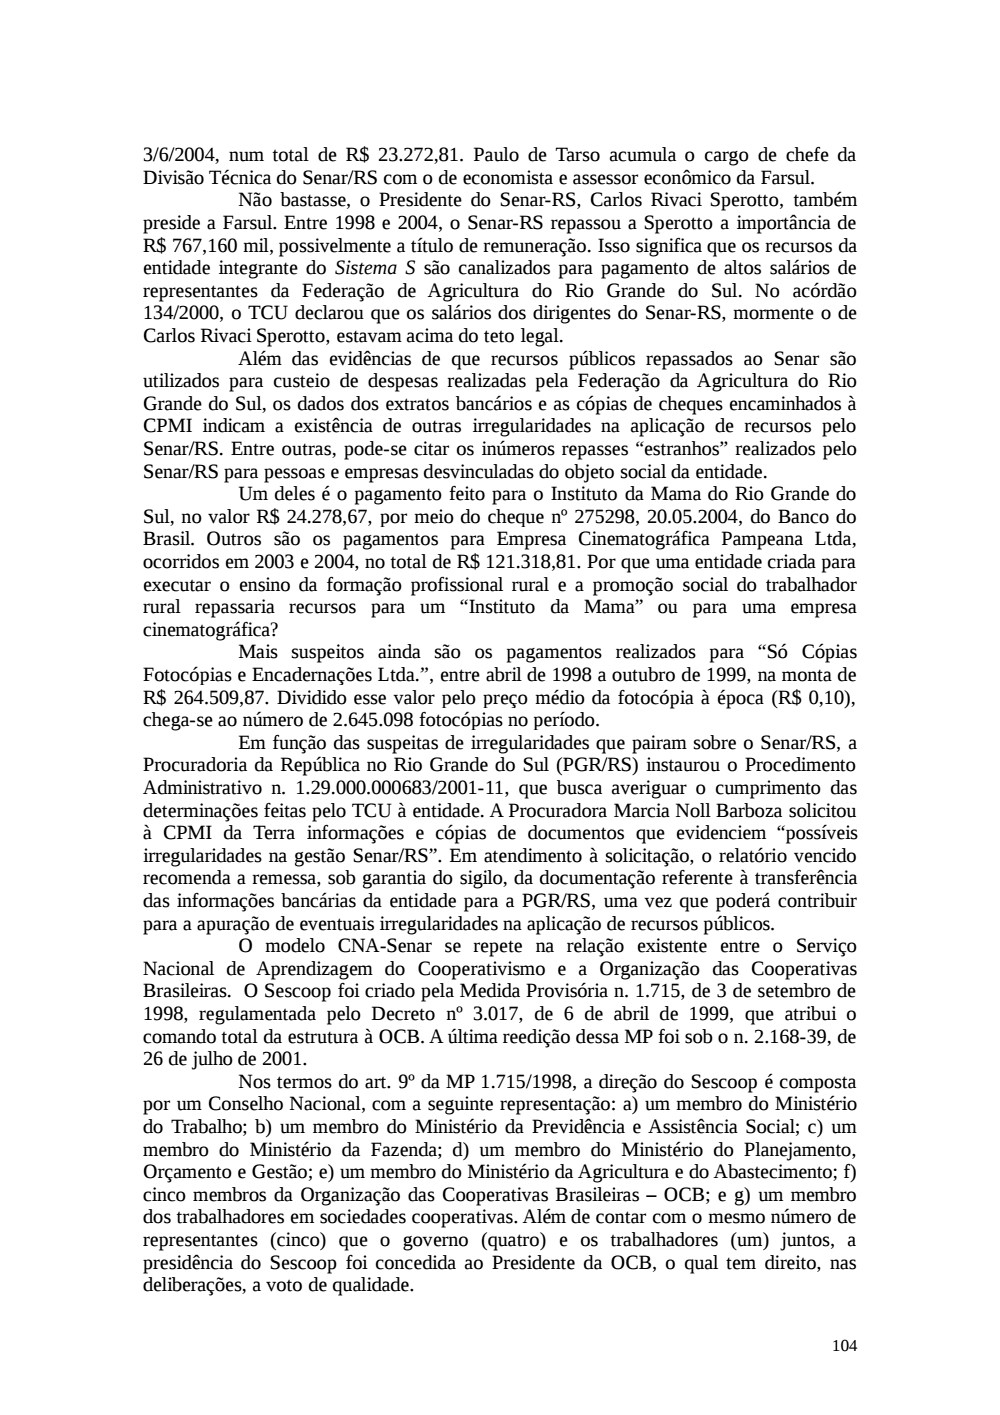 Page 104 from Relatório final da comissão